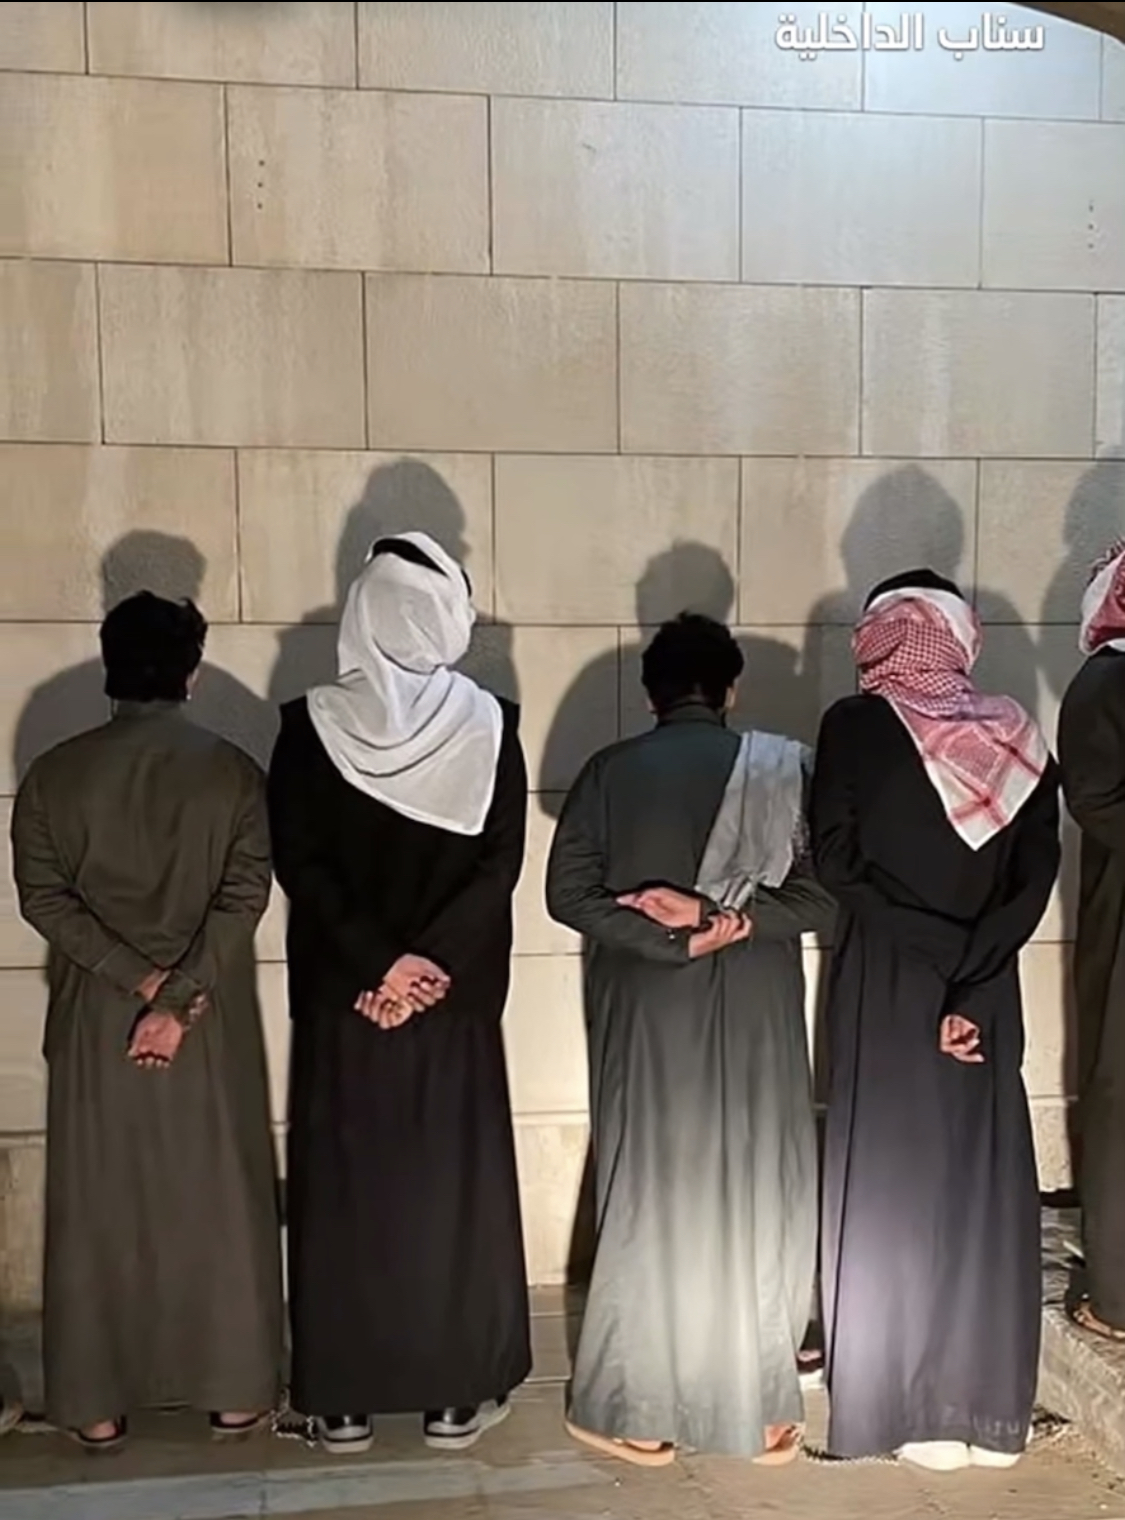 شرطة الرياض تطيح بـ 6 مواطنين ظهروا في مقطع المشاجرة الجماعية